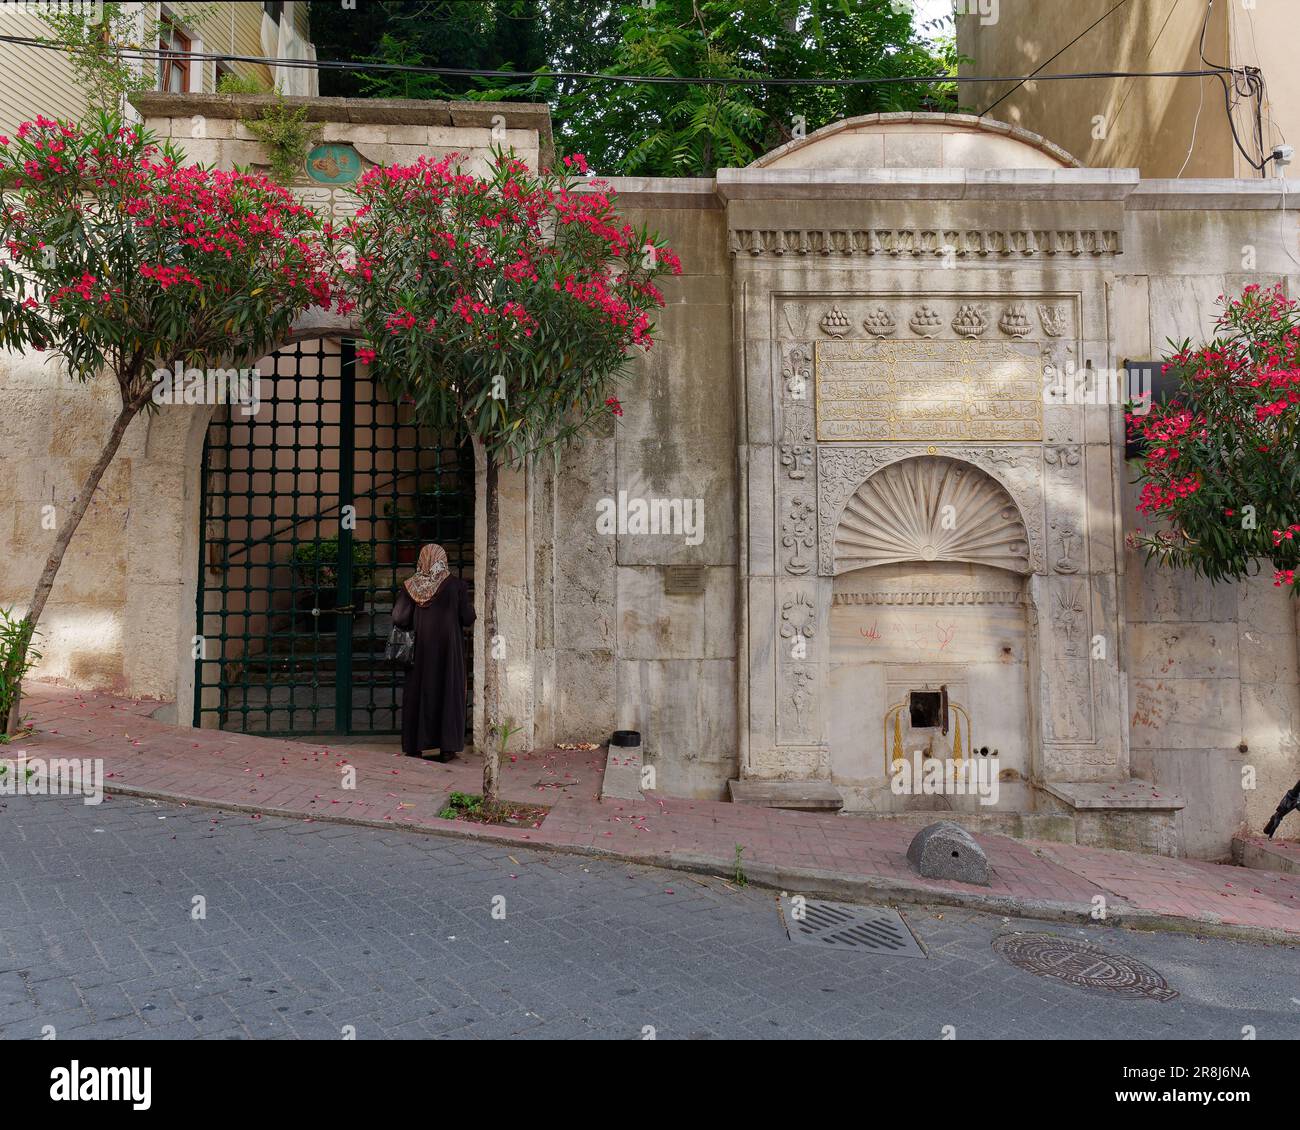 Donna che indossa un hijab in una strada con una fontana e accesso recintato a una proprietà, più alberi con fiori rossi. In Turchia Foto Stock